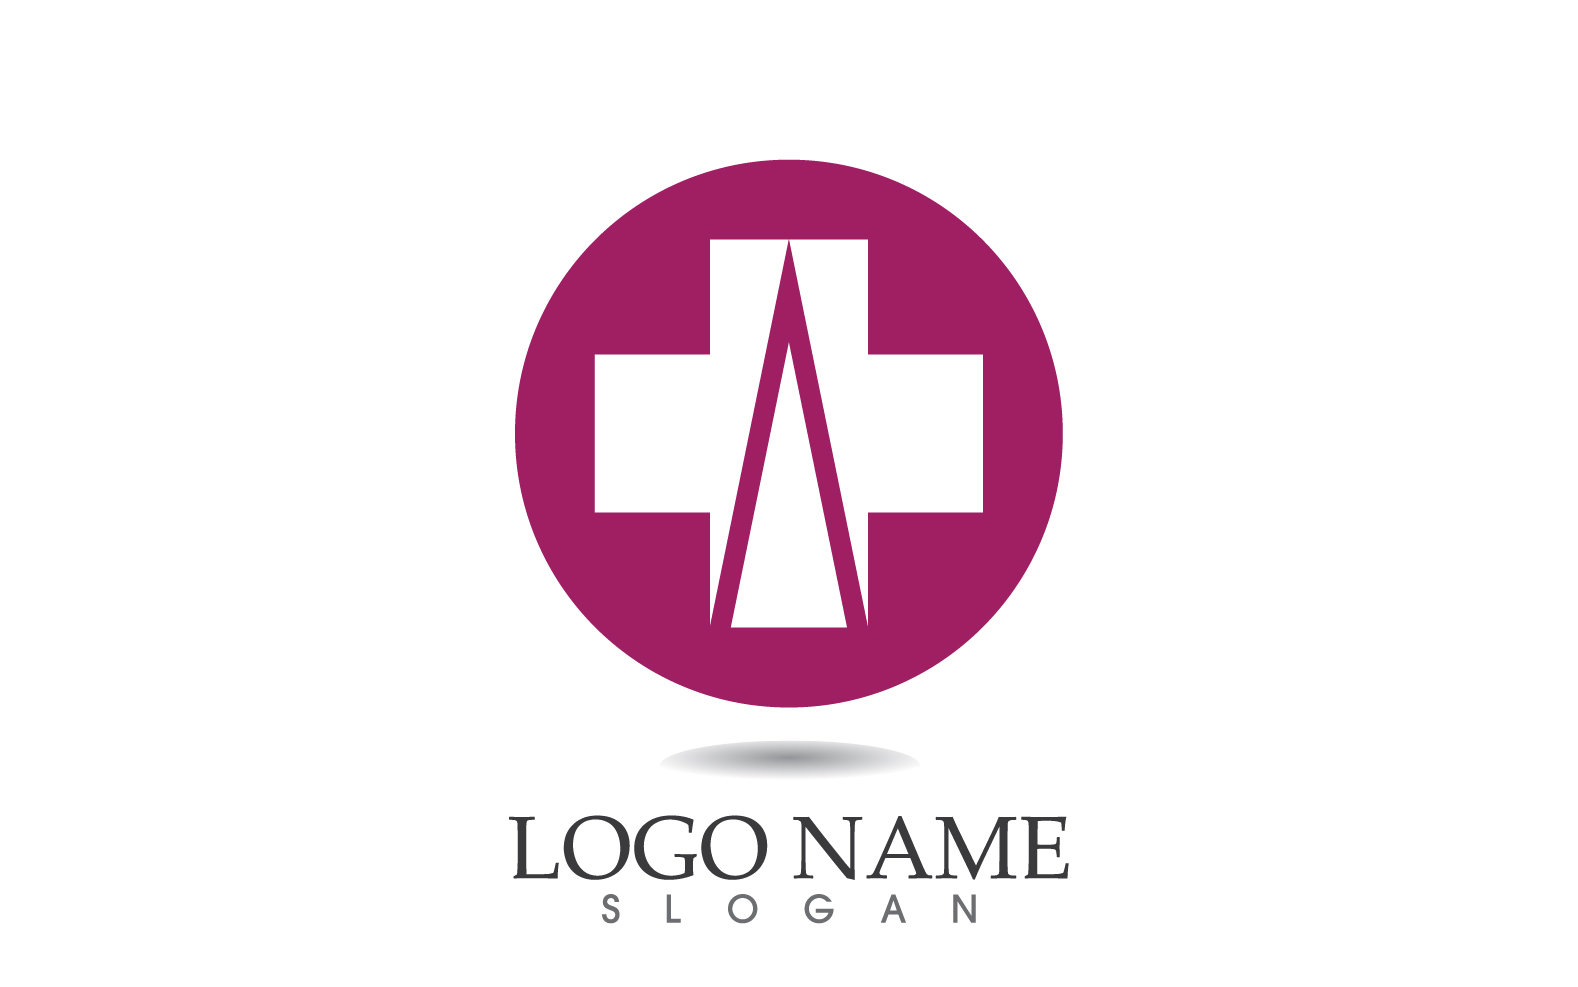 Medical cross Hospital logo vector symbol design v15